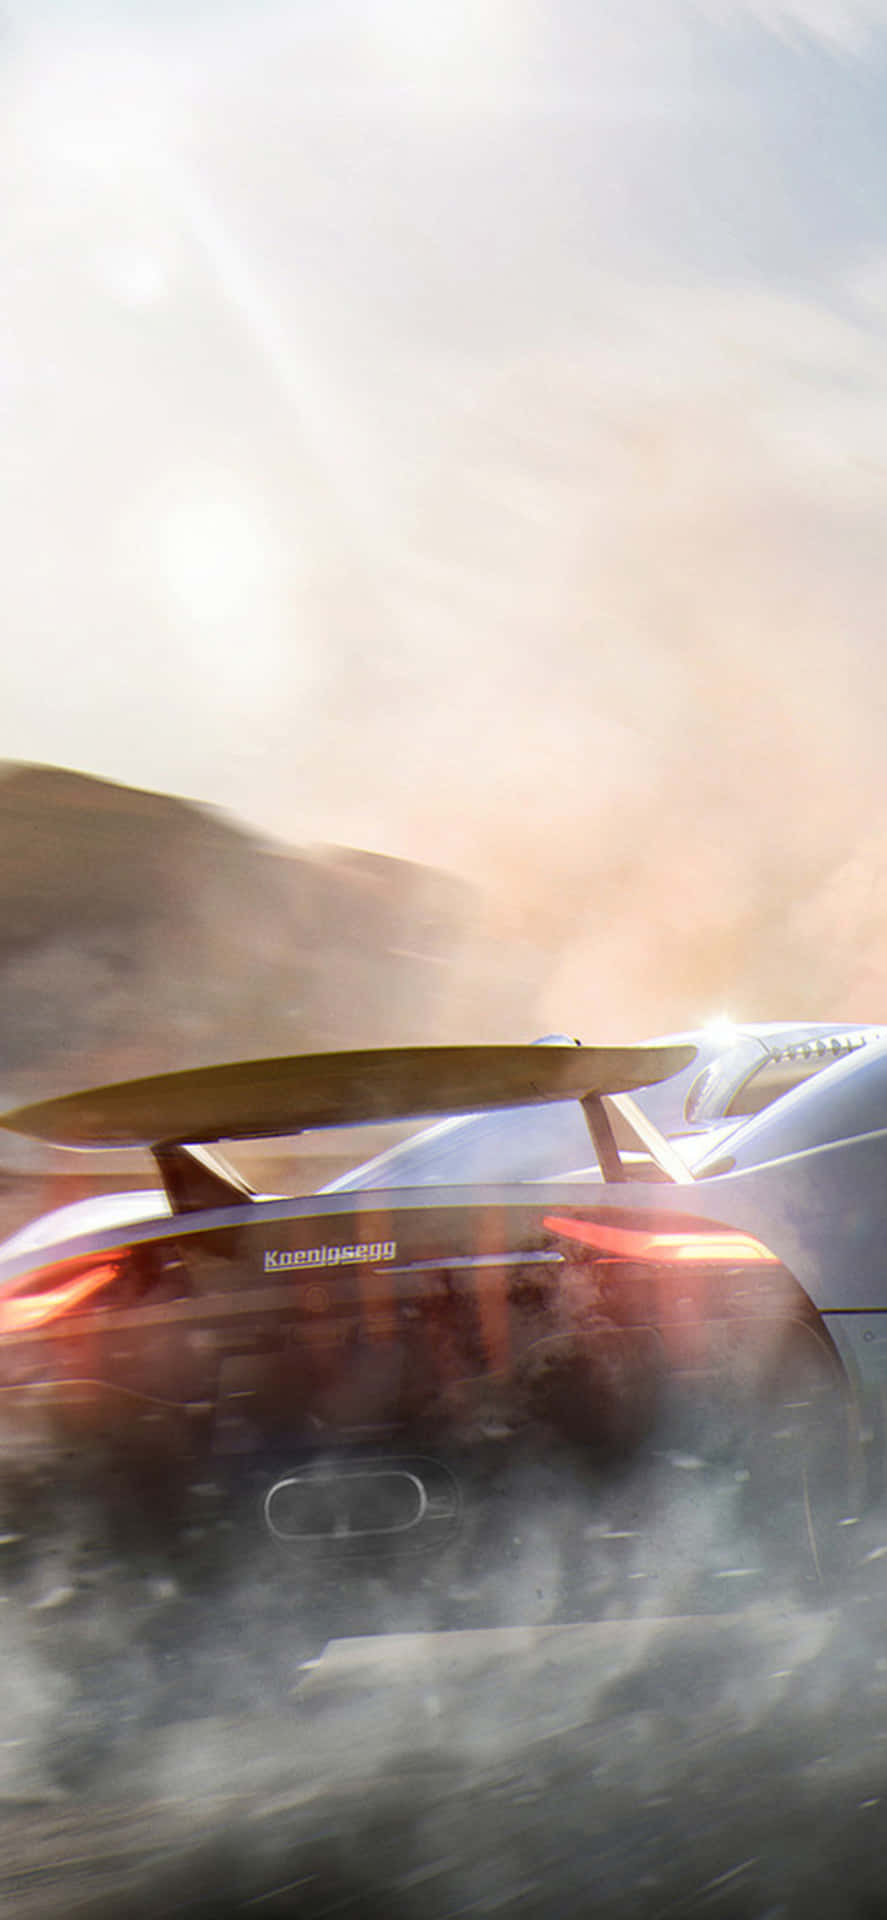 Iphonexs Bakgrundsbild Med Need For Speed Payback, Koenigsegg Regera Omgiven Av Rök.